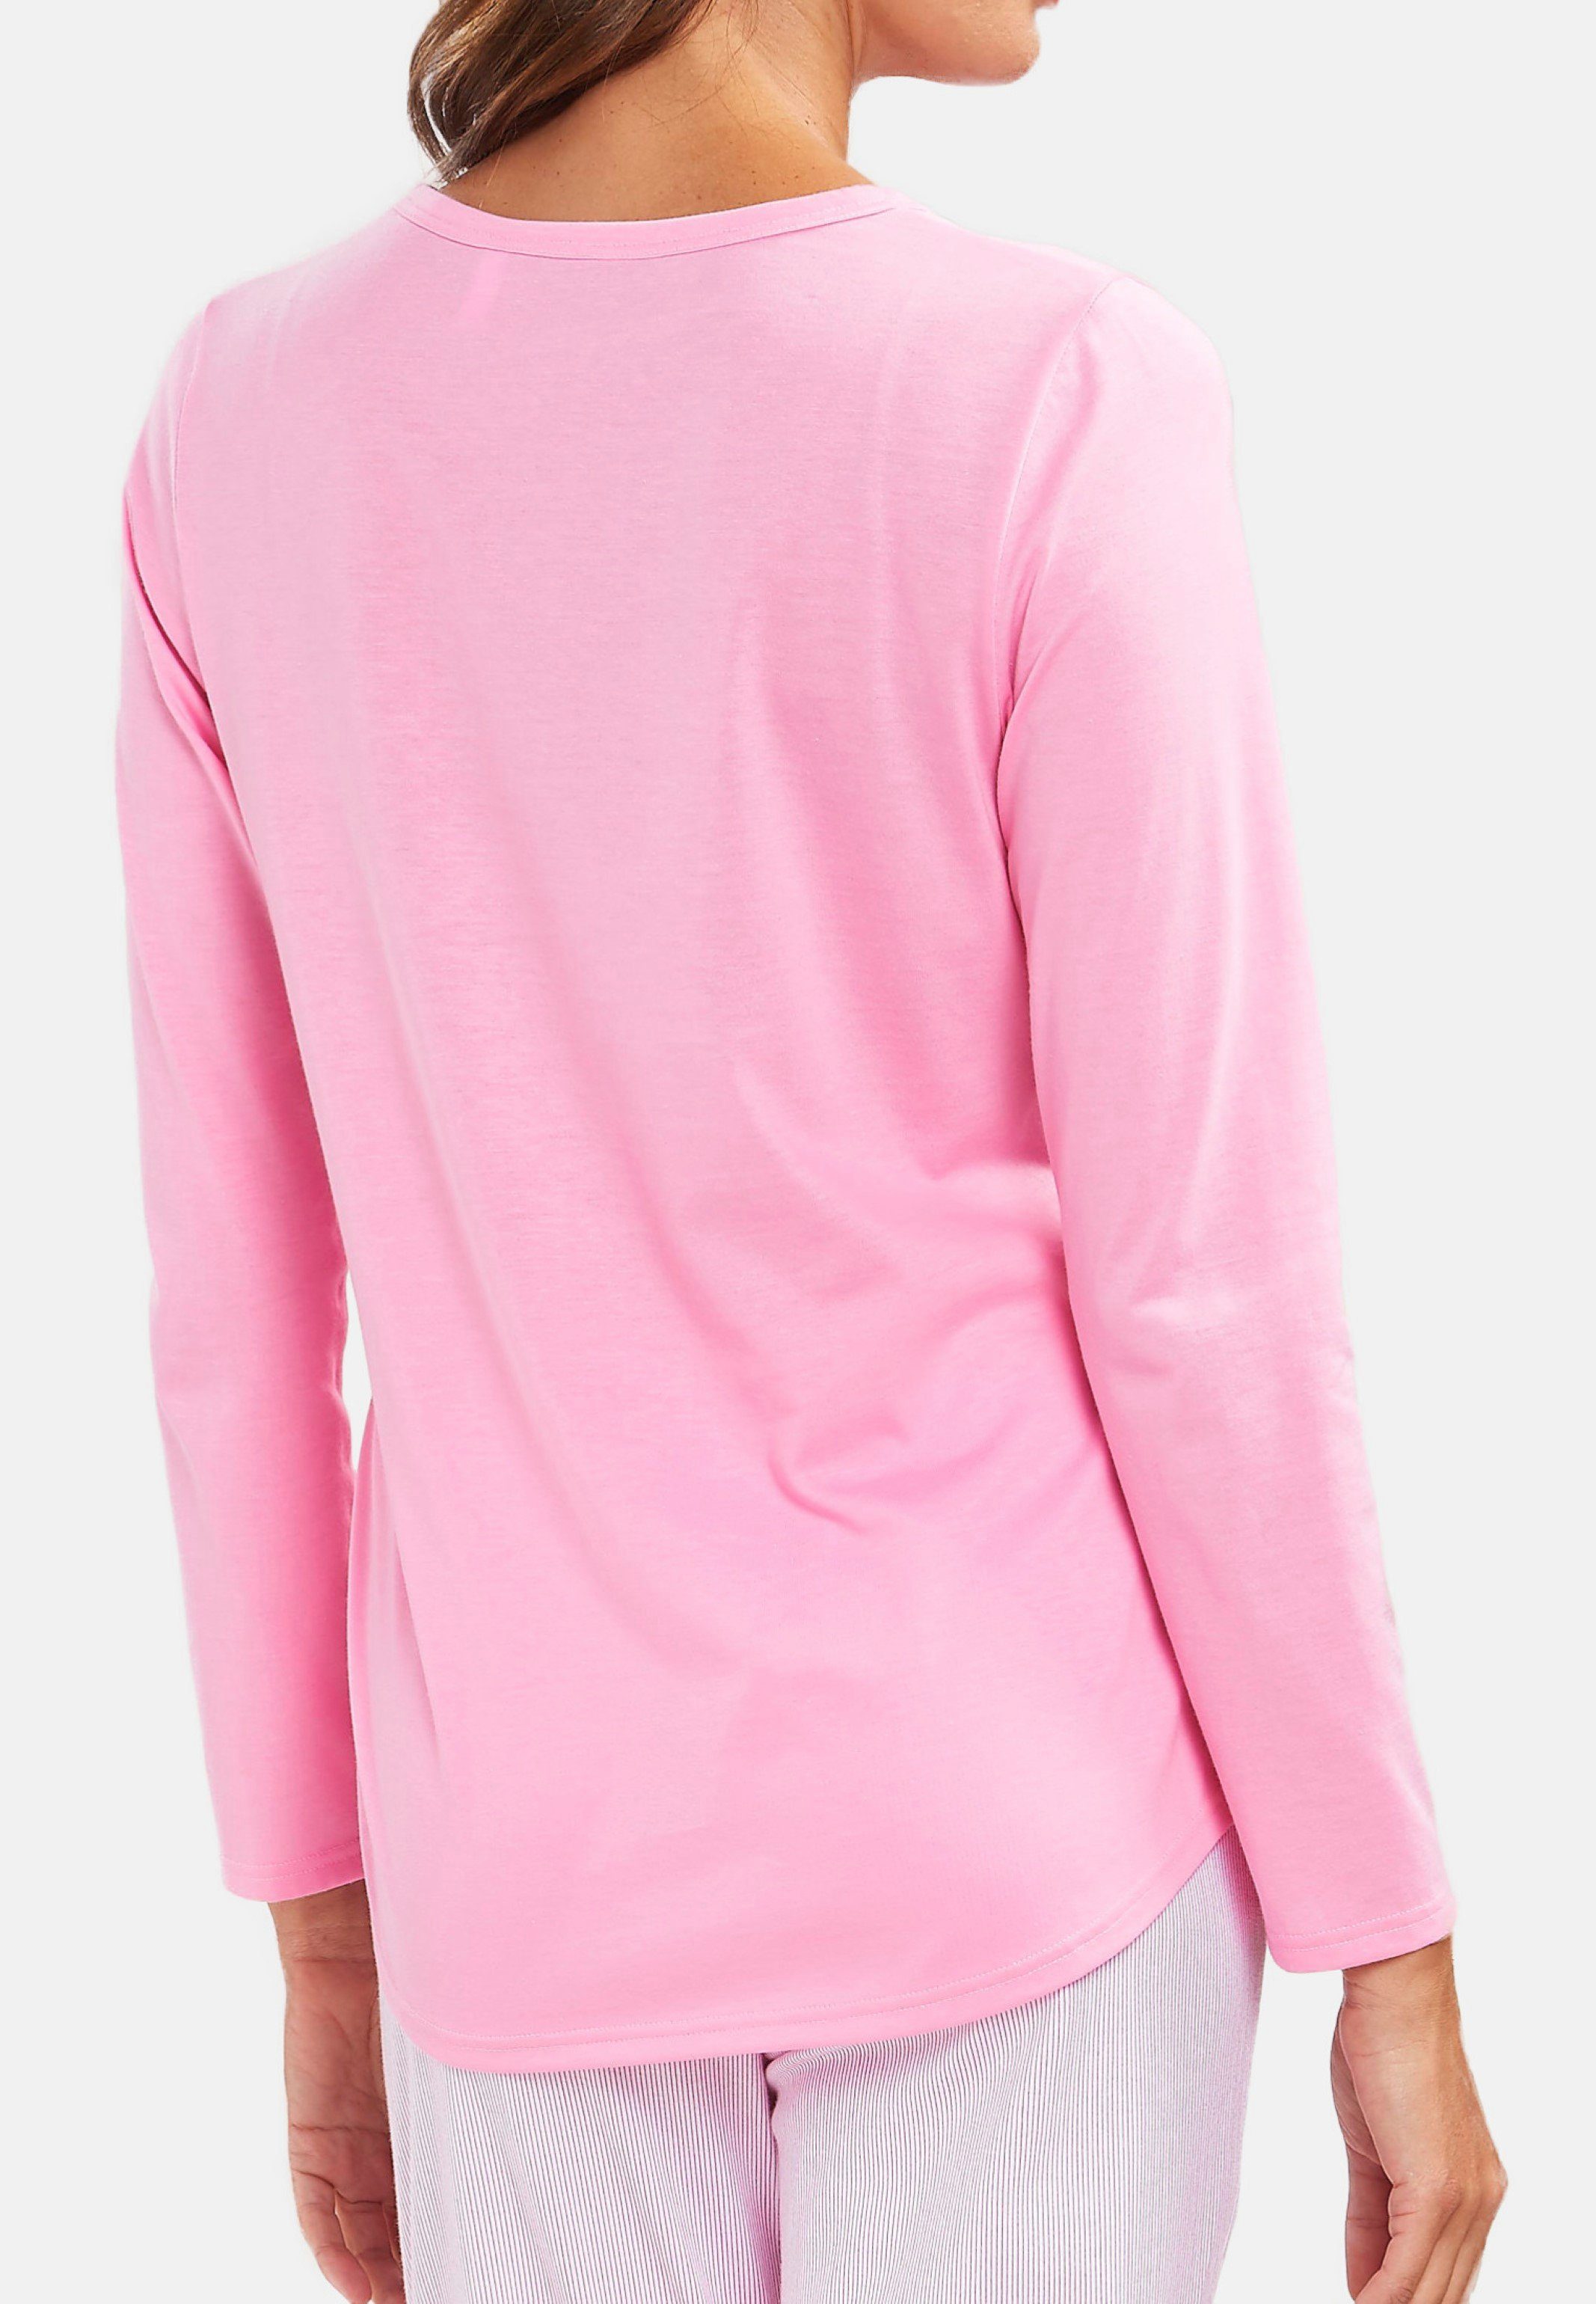 - Schlafanzug Aurora (1-tlg) Pyjamaoberteil - Shirt Hochwertig Baumwolle Rösch Pink verarbeitet Basic langarm